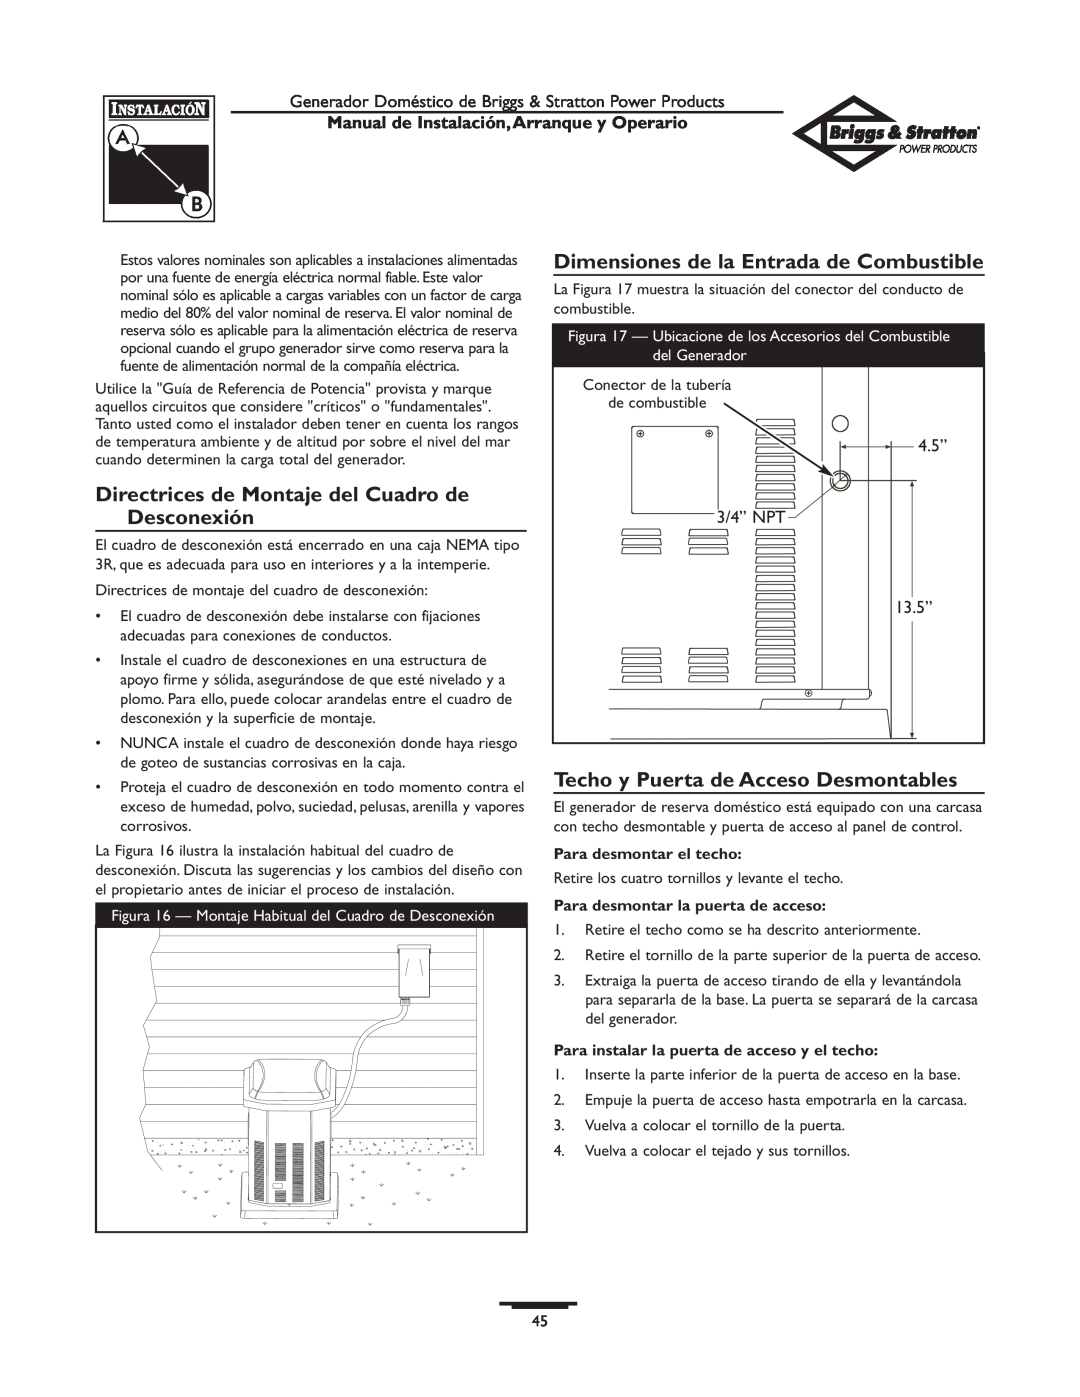 Briggs & Stratton 01897-0 manual Directrices de Montaje del Cuadro de Desconexión, Dimensiones de la Entrada de Combustible 